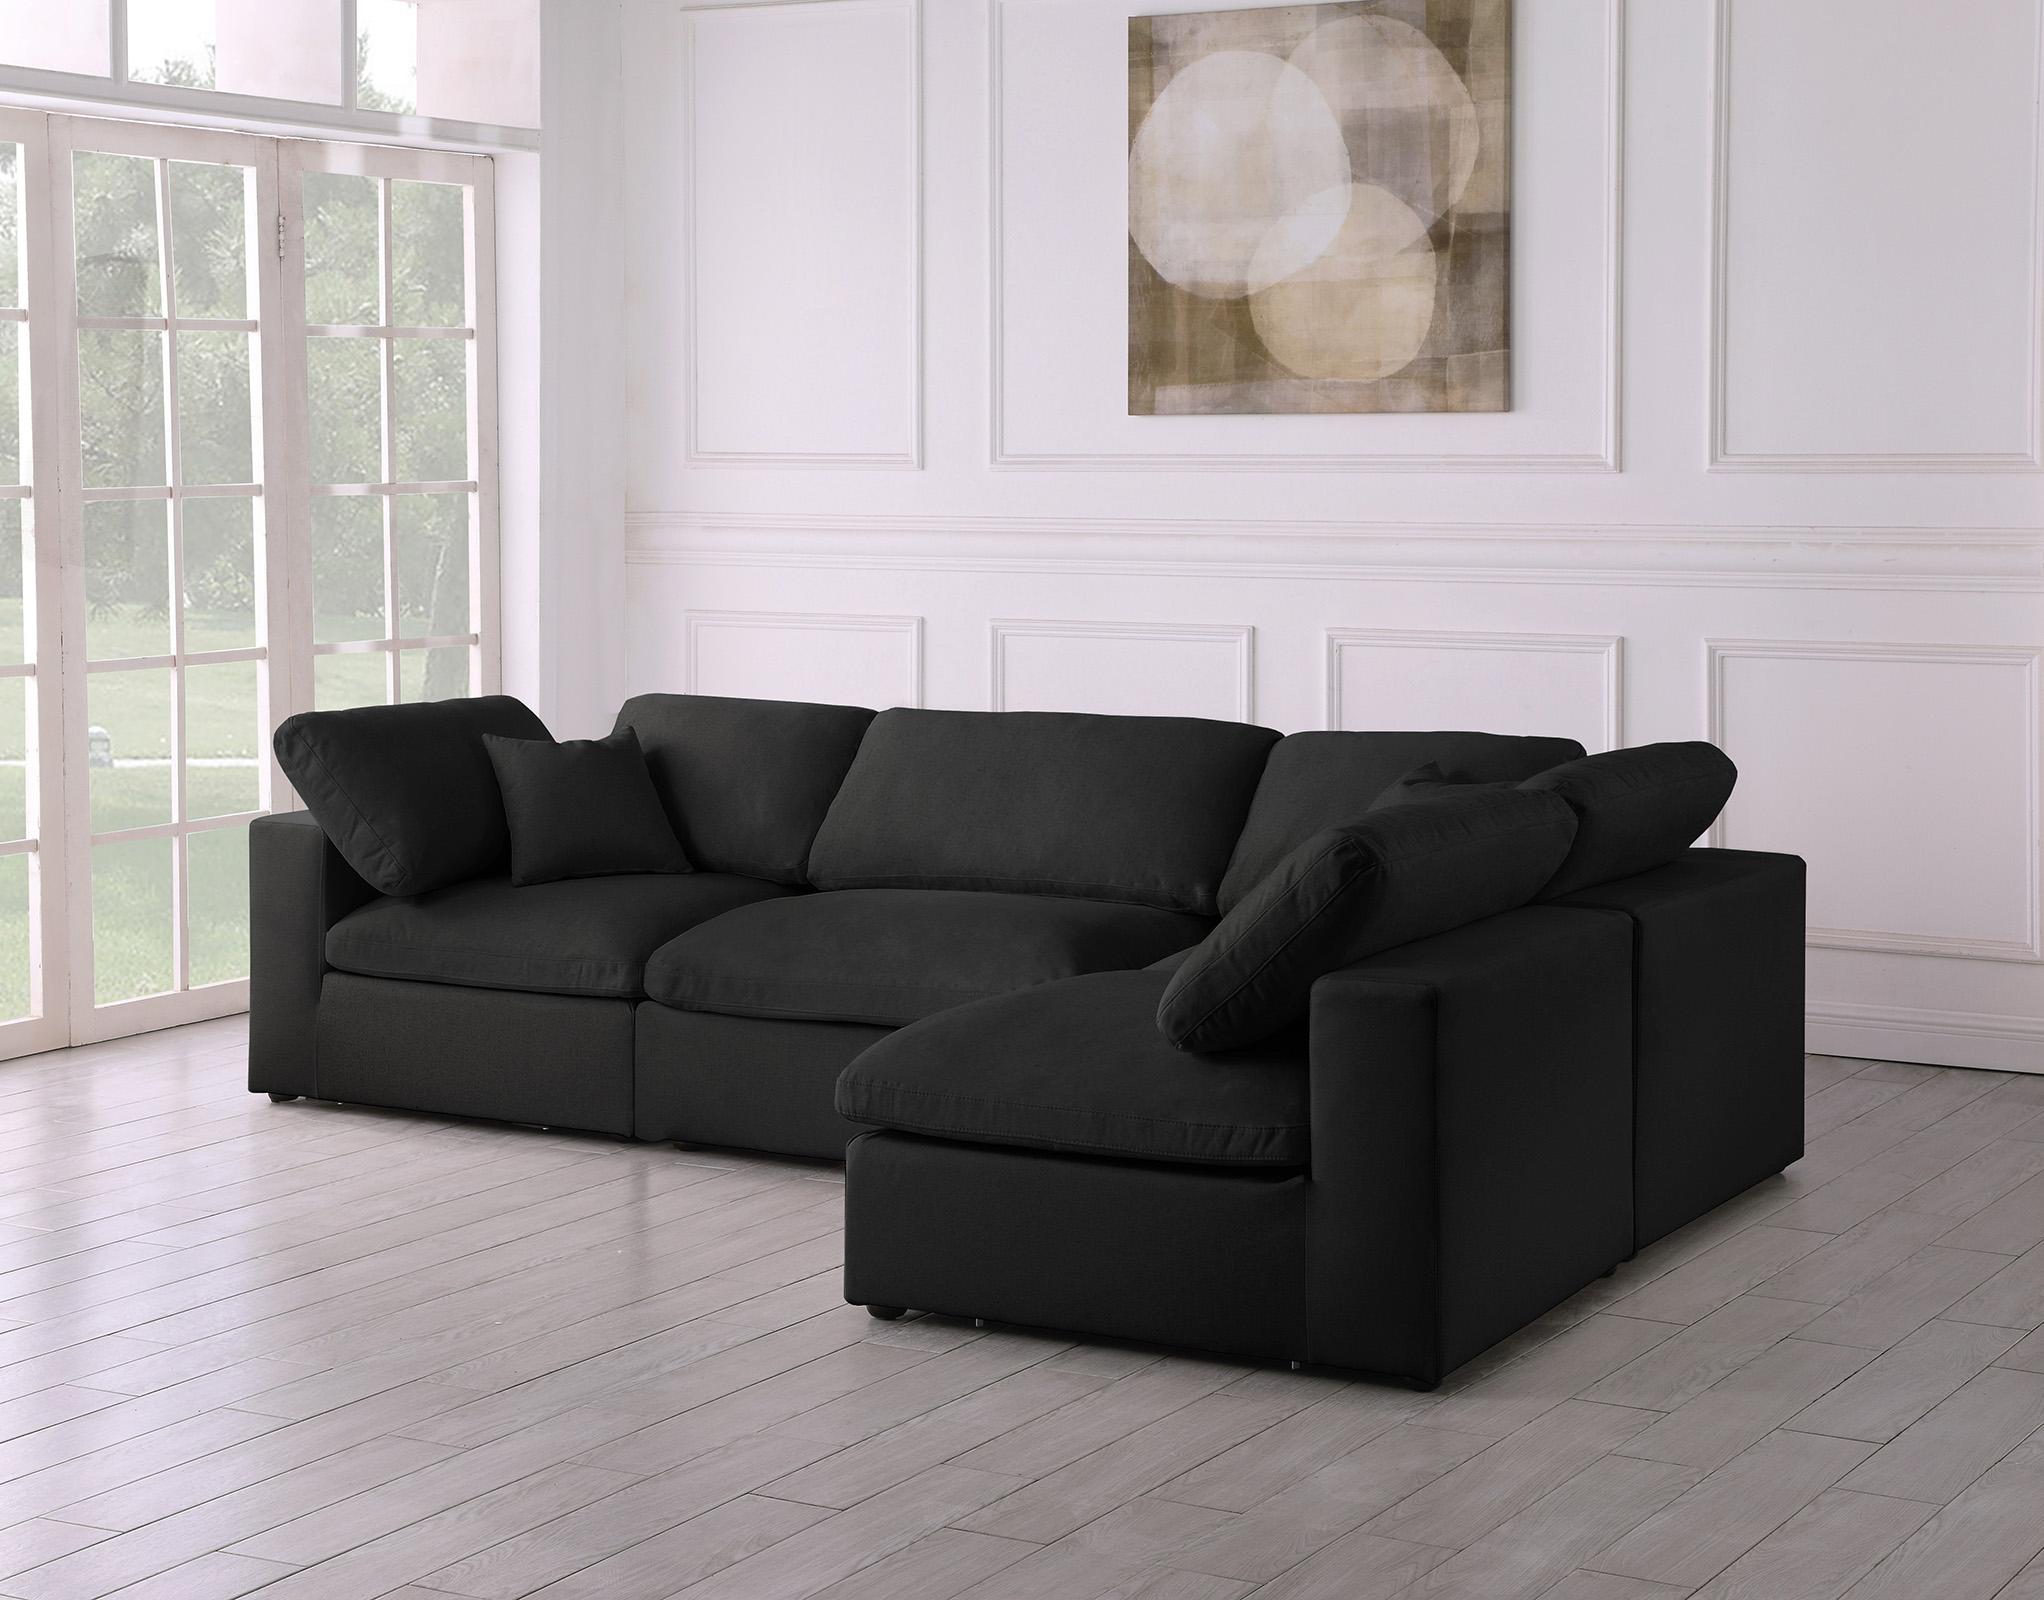 

    
Meridian Furniture SERENE 601Black-Sec4B Modular Sectional Black 601Black-Sec4B
